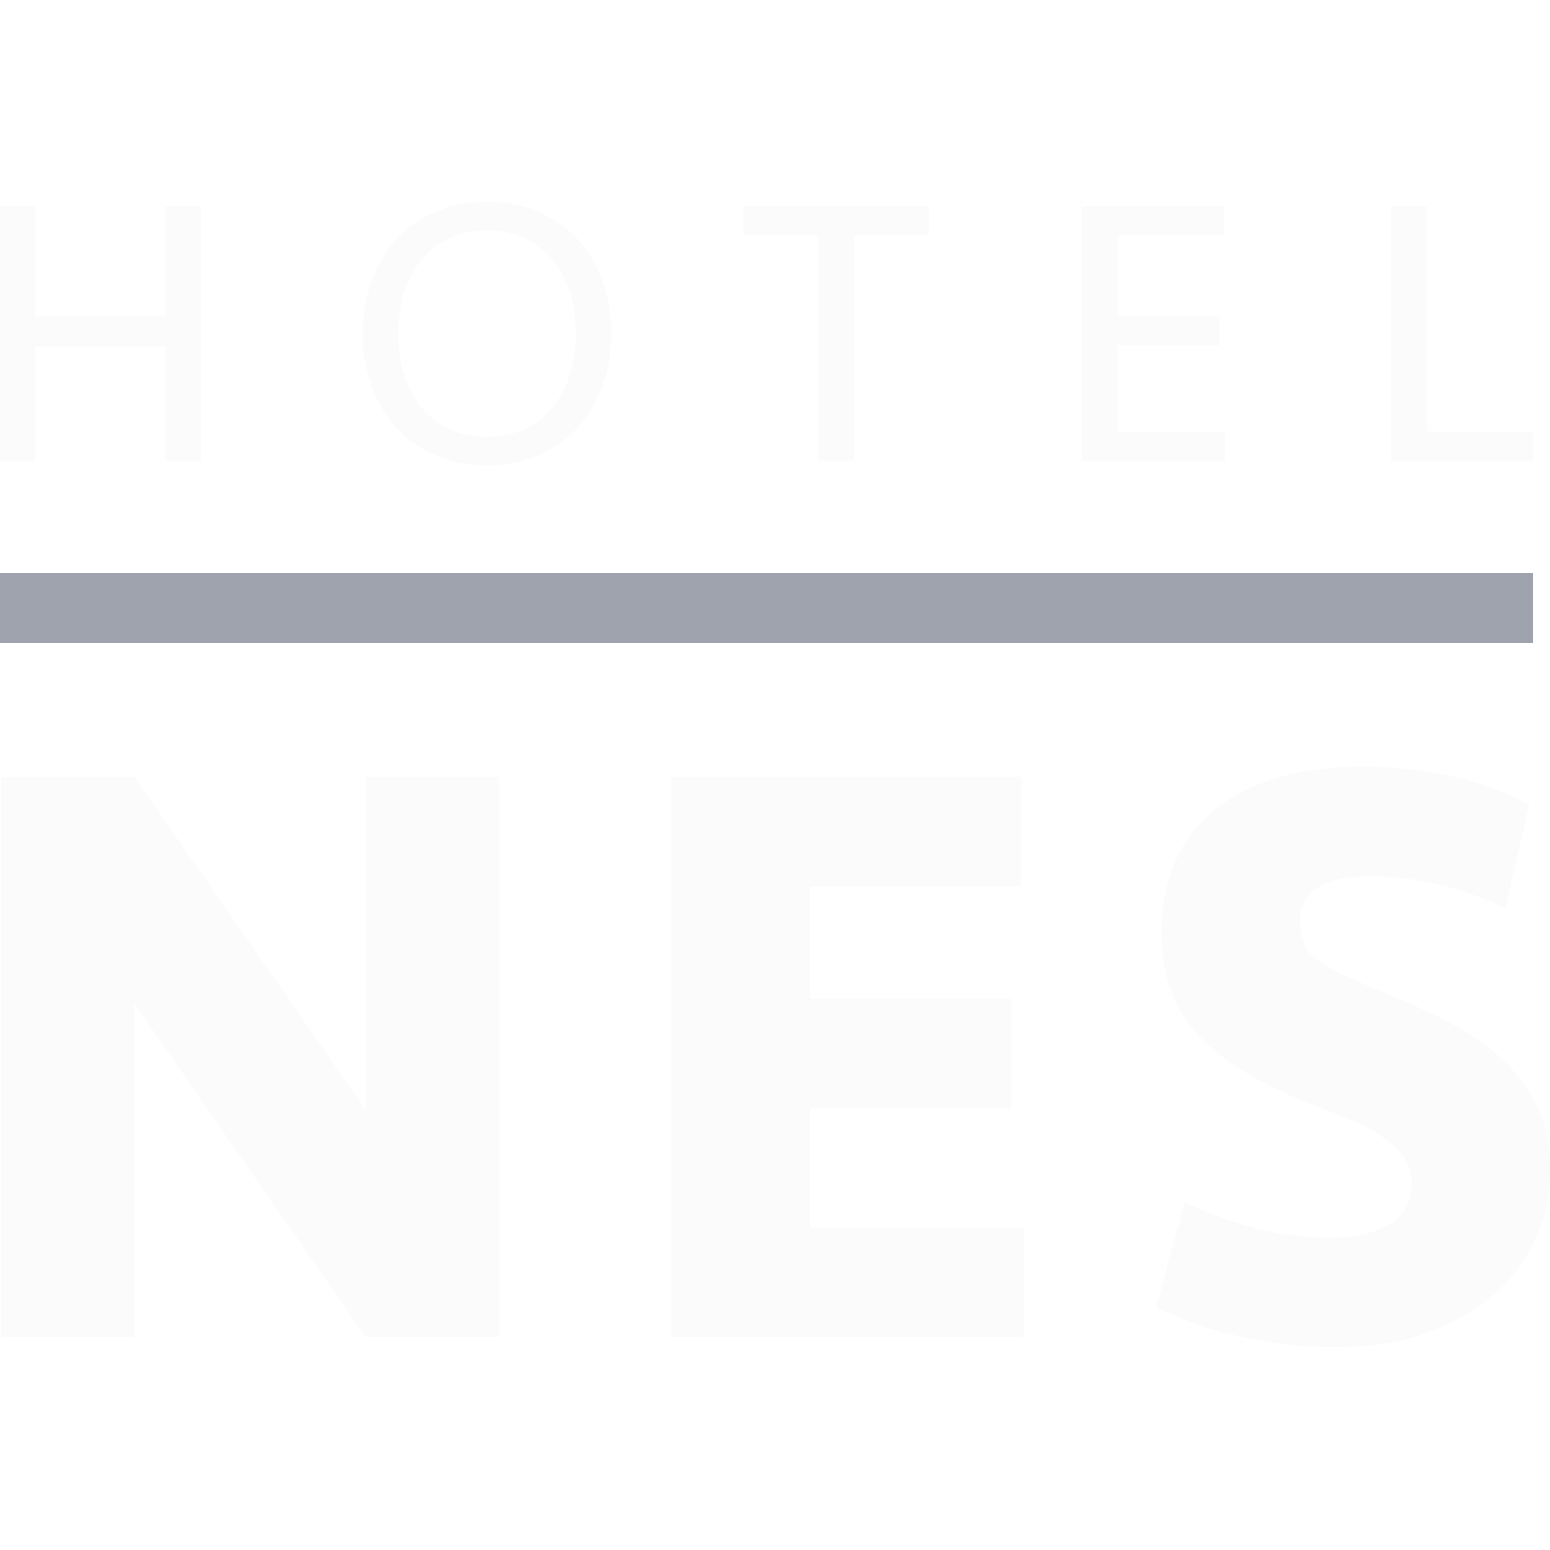 Hotel Nes - Ameland